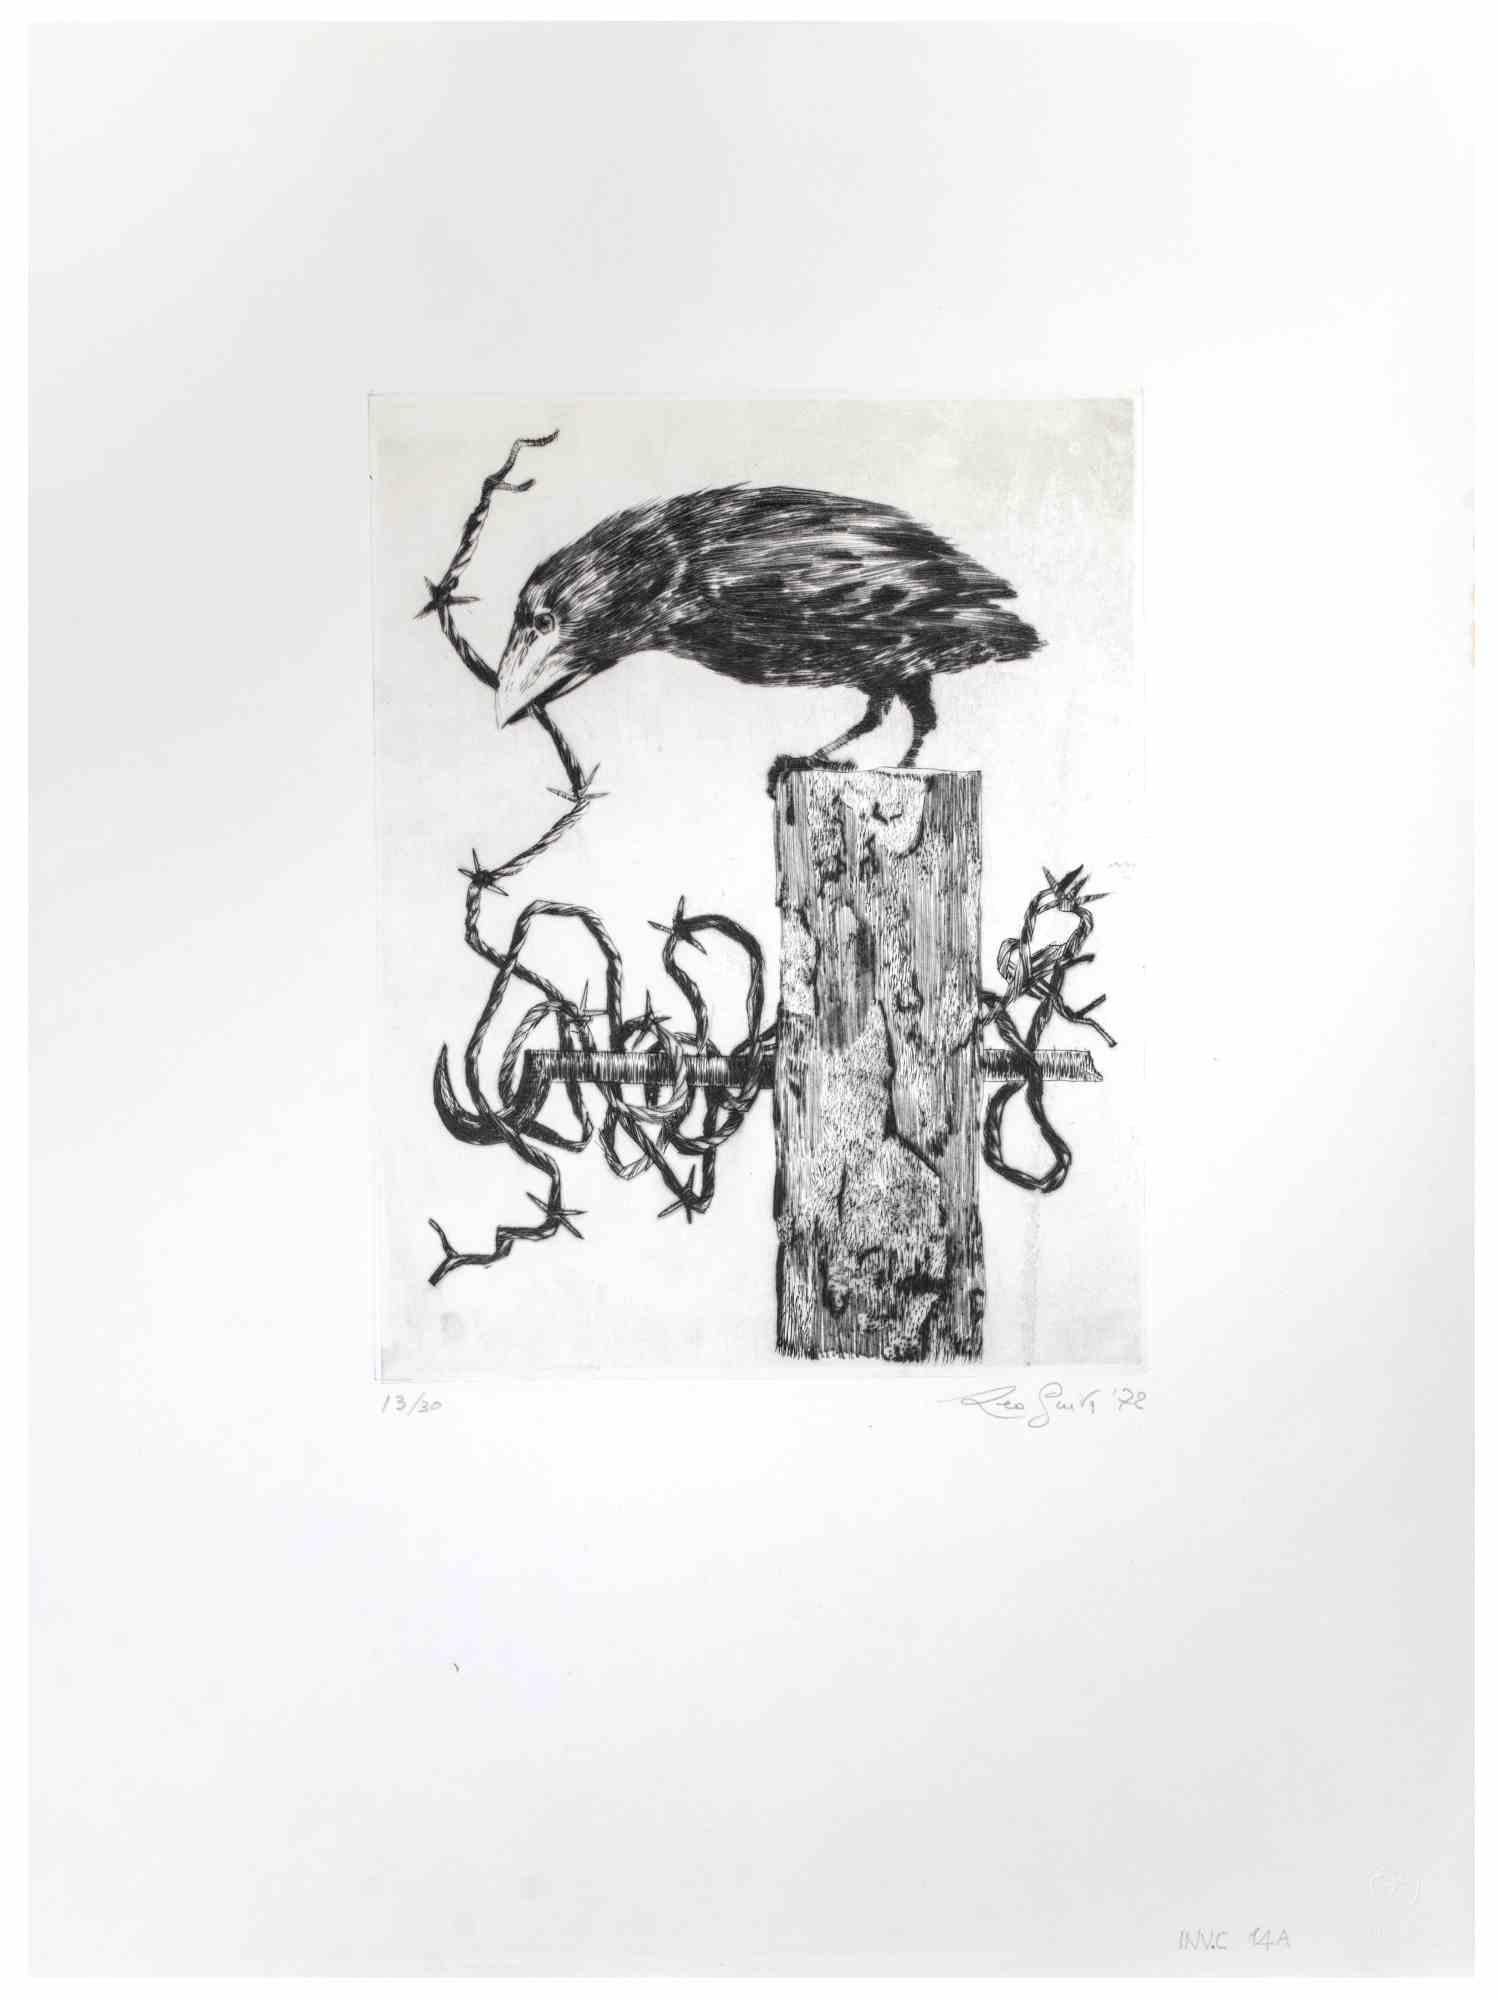 Crow ist ein Kunstwerk des zeitgenössischen italienischen Künstlers Leo Guida (1992 - 2017) aus dem Jahr 1972.

Original-Radierung in Schwarz-Weiß auf Papier.

Rechts unten handschriftlich signiert, links unten datiert und nummeriert, Auflage 30